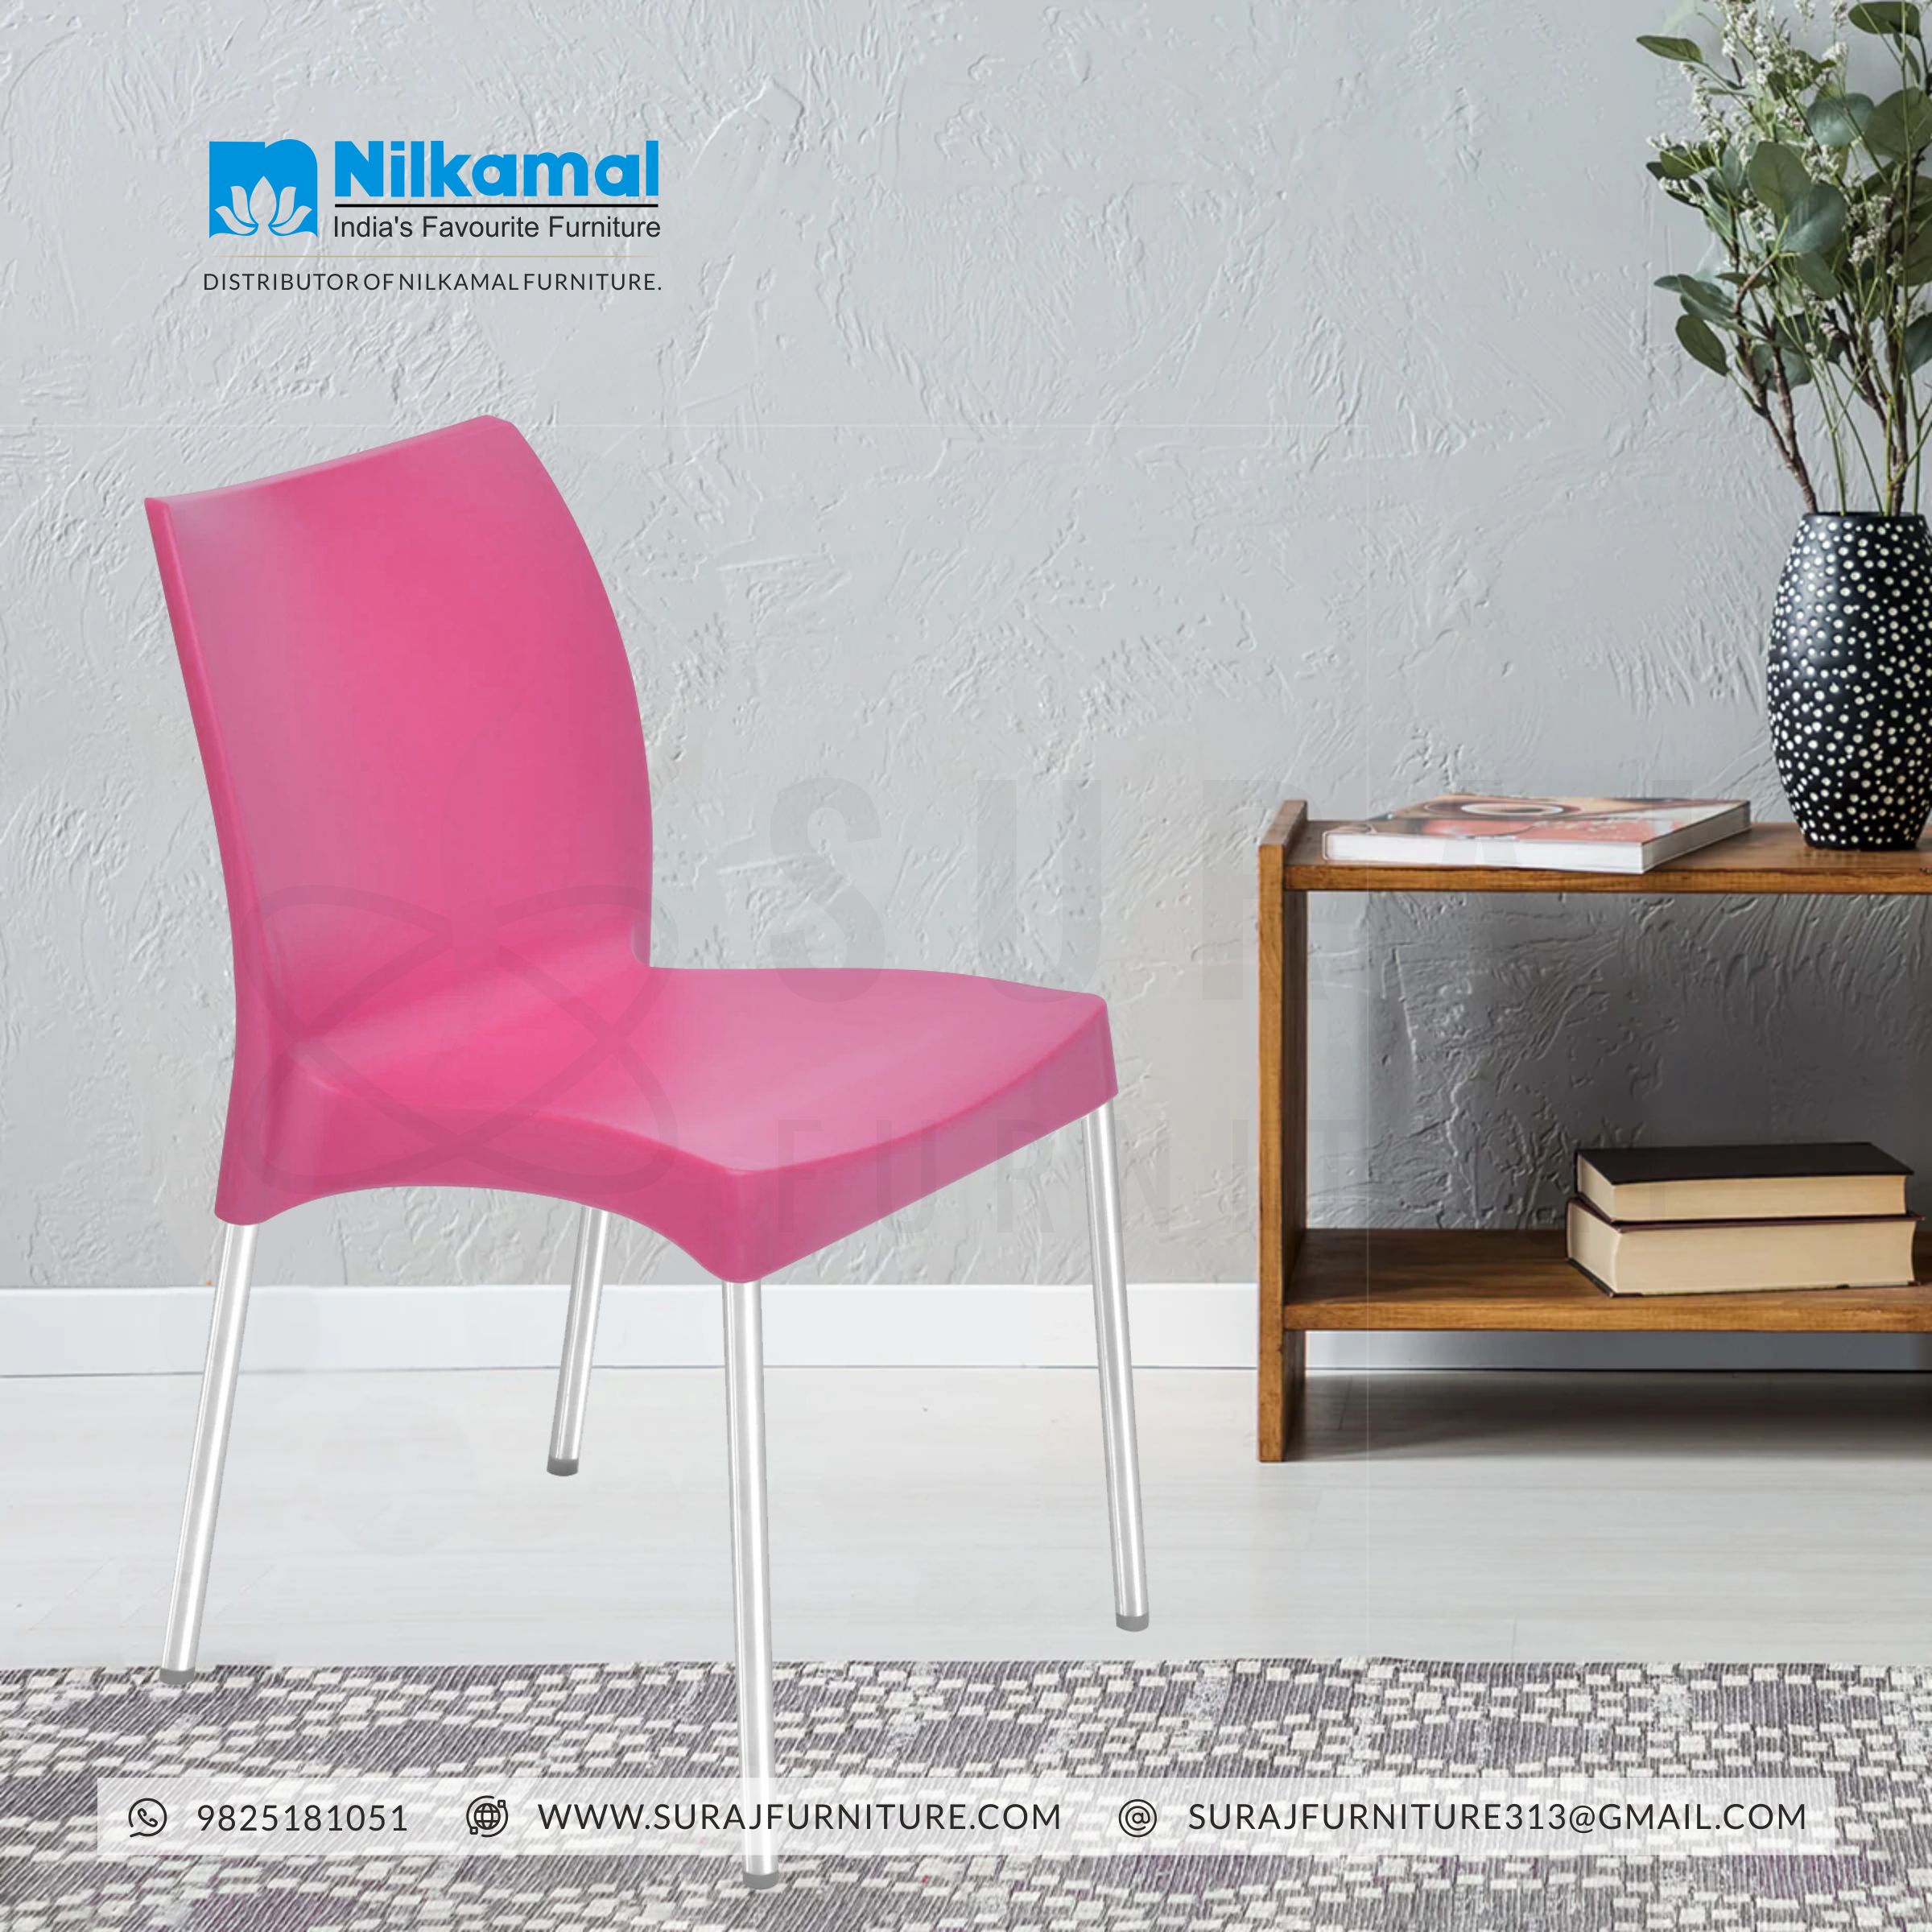 Nilkamal Steel Chair